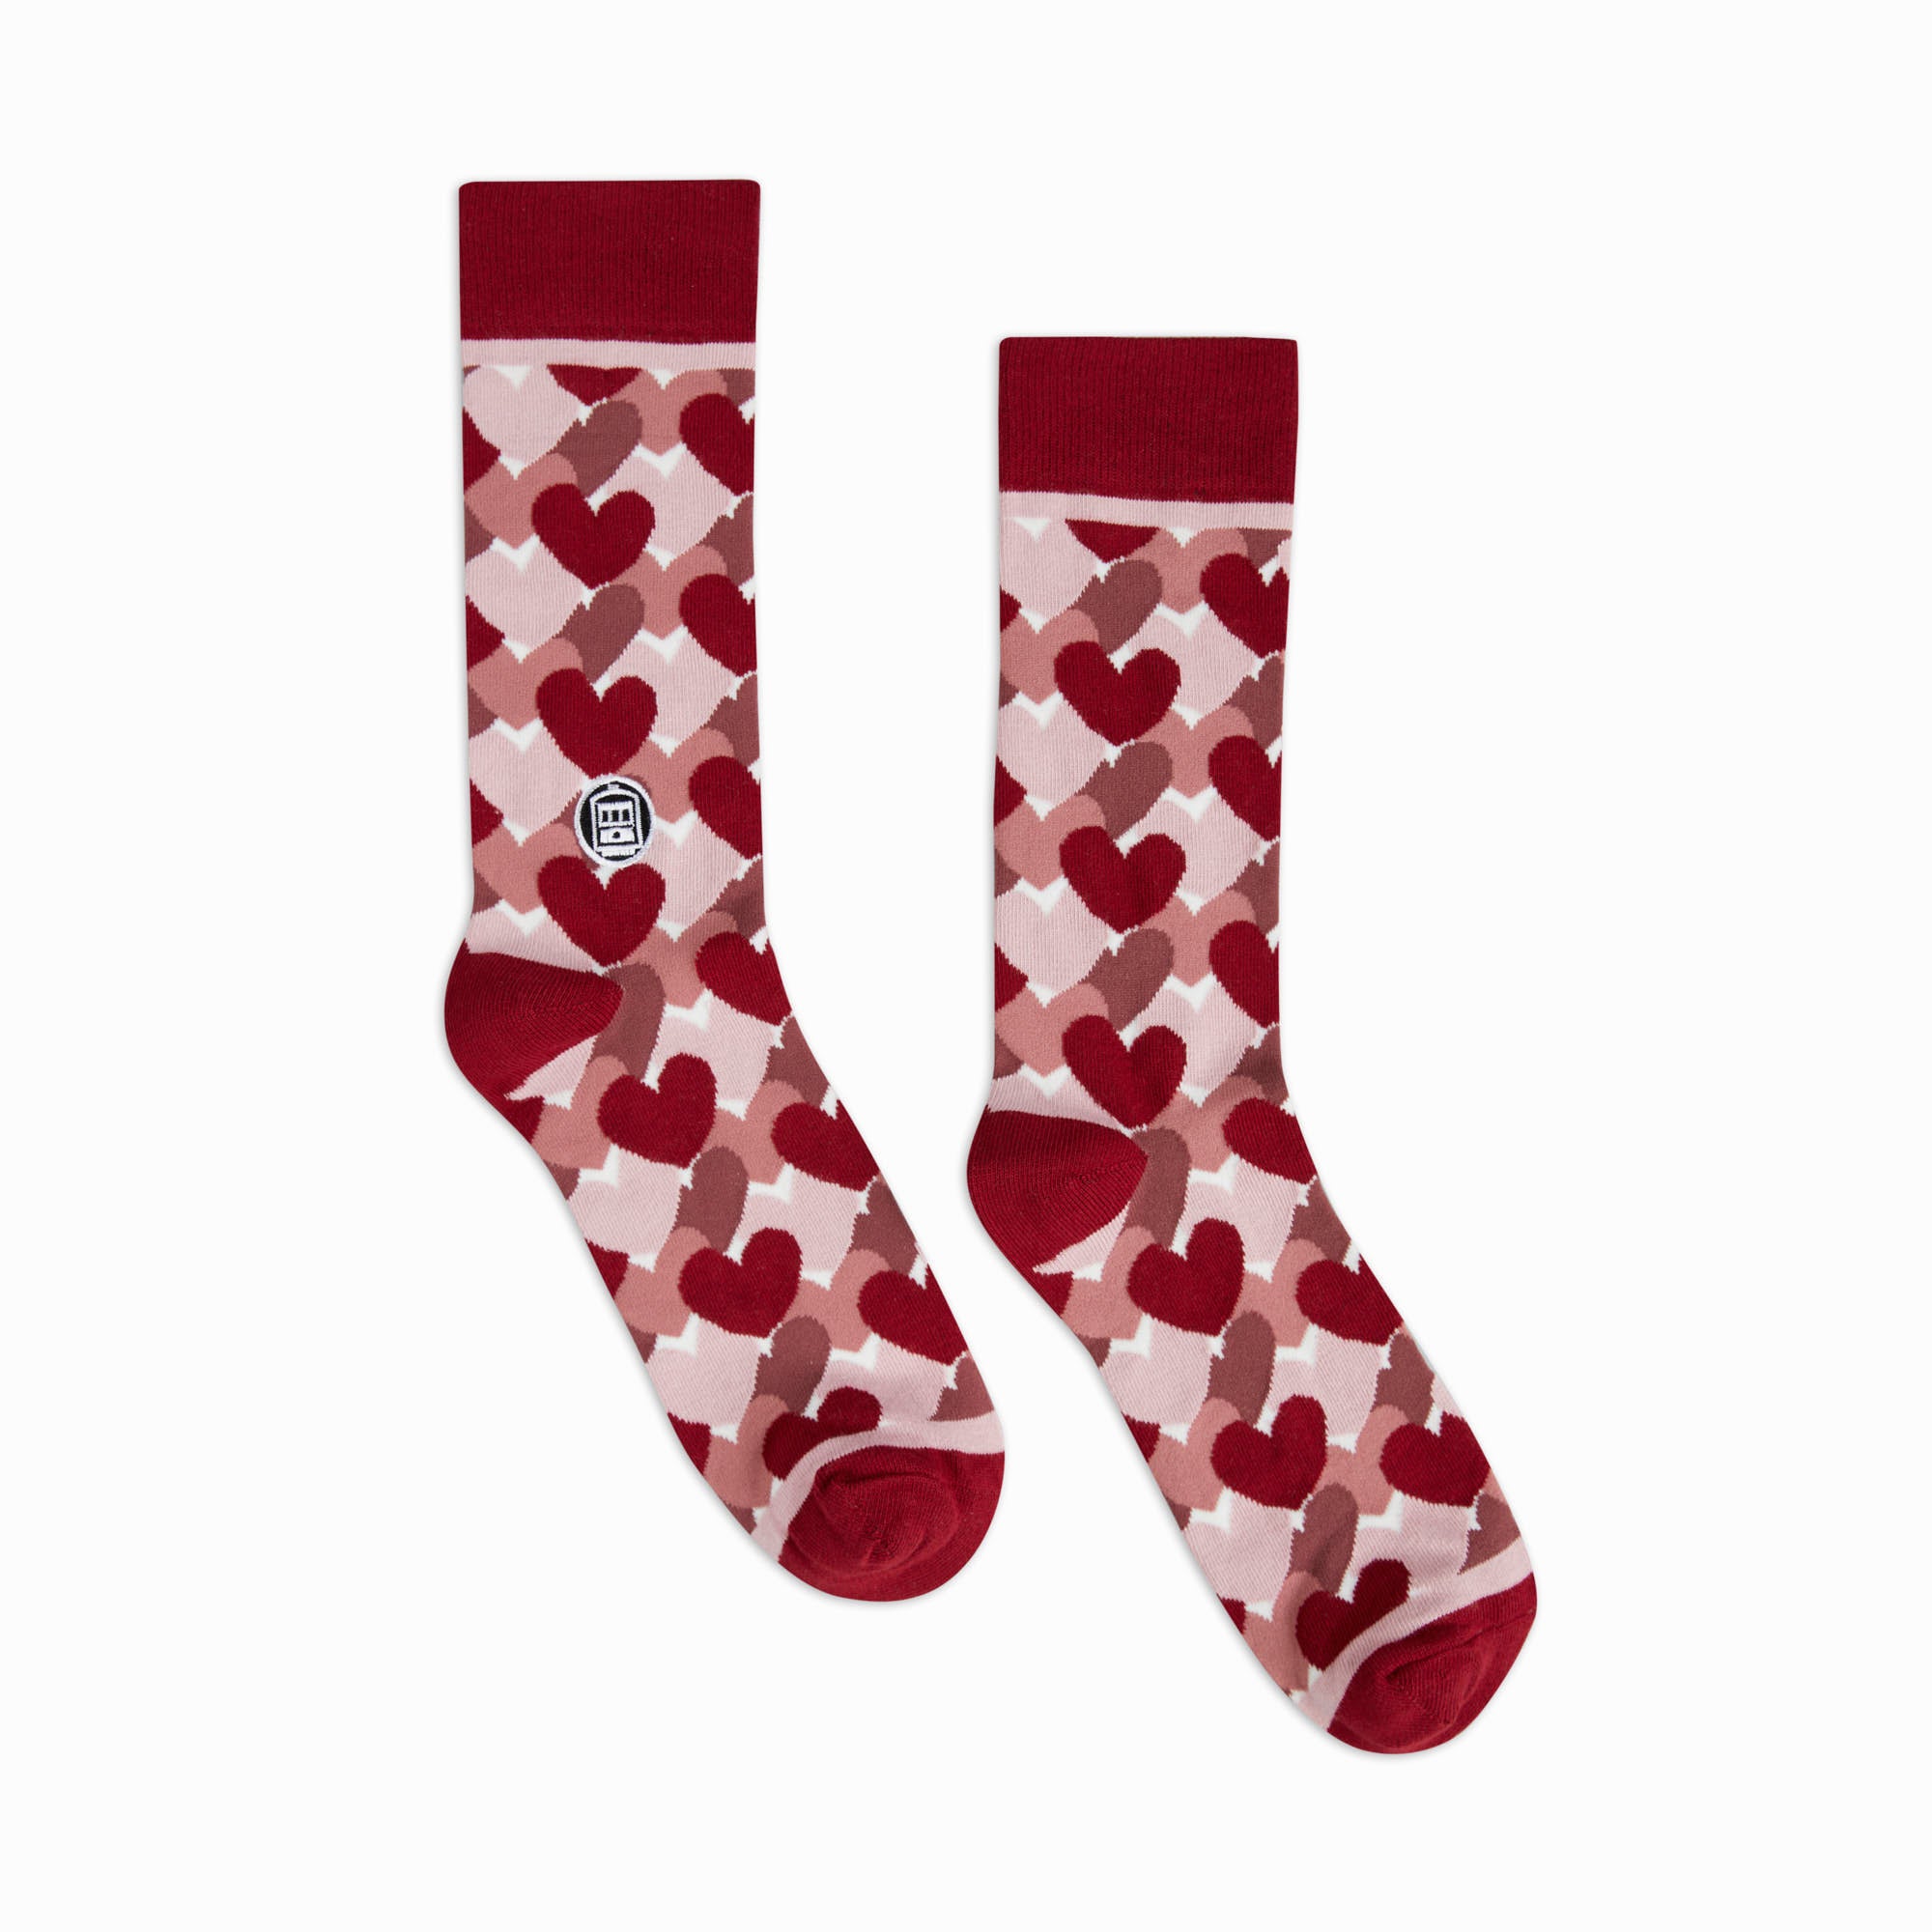 Bonfolk Heart Socks